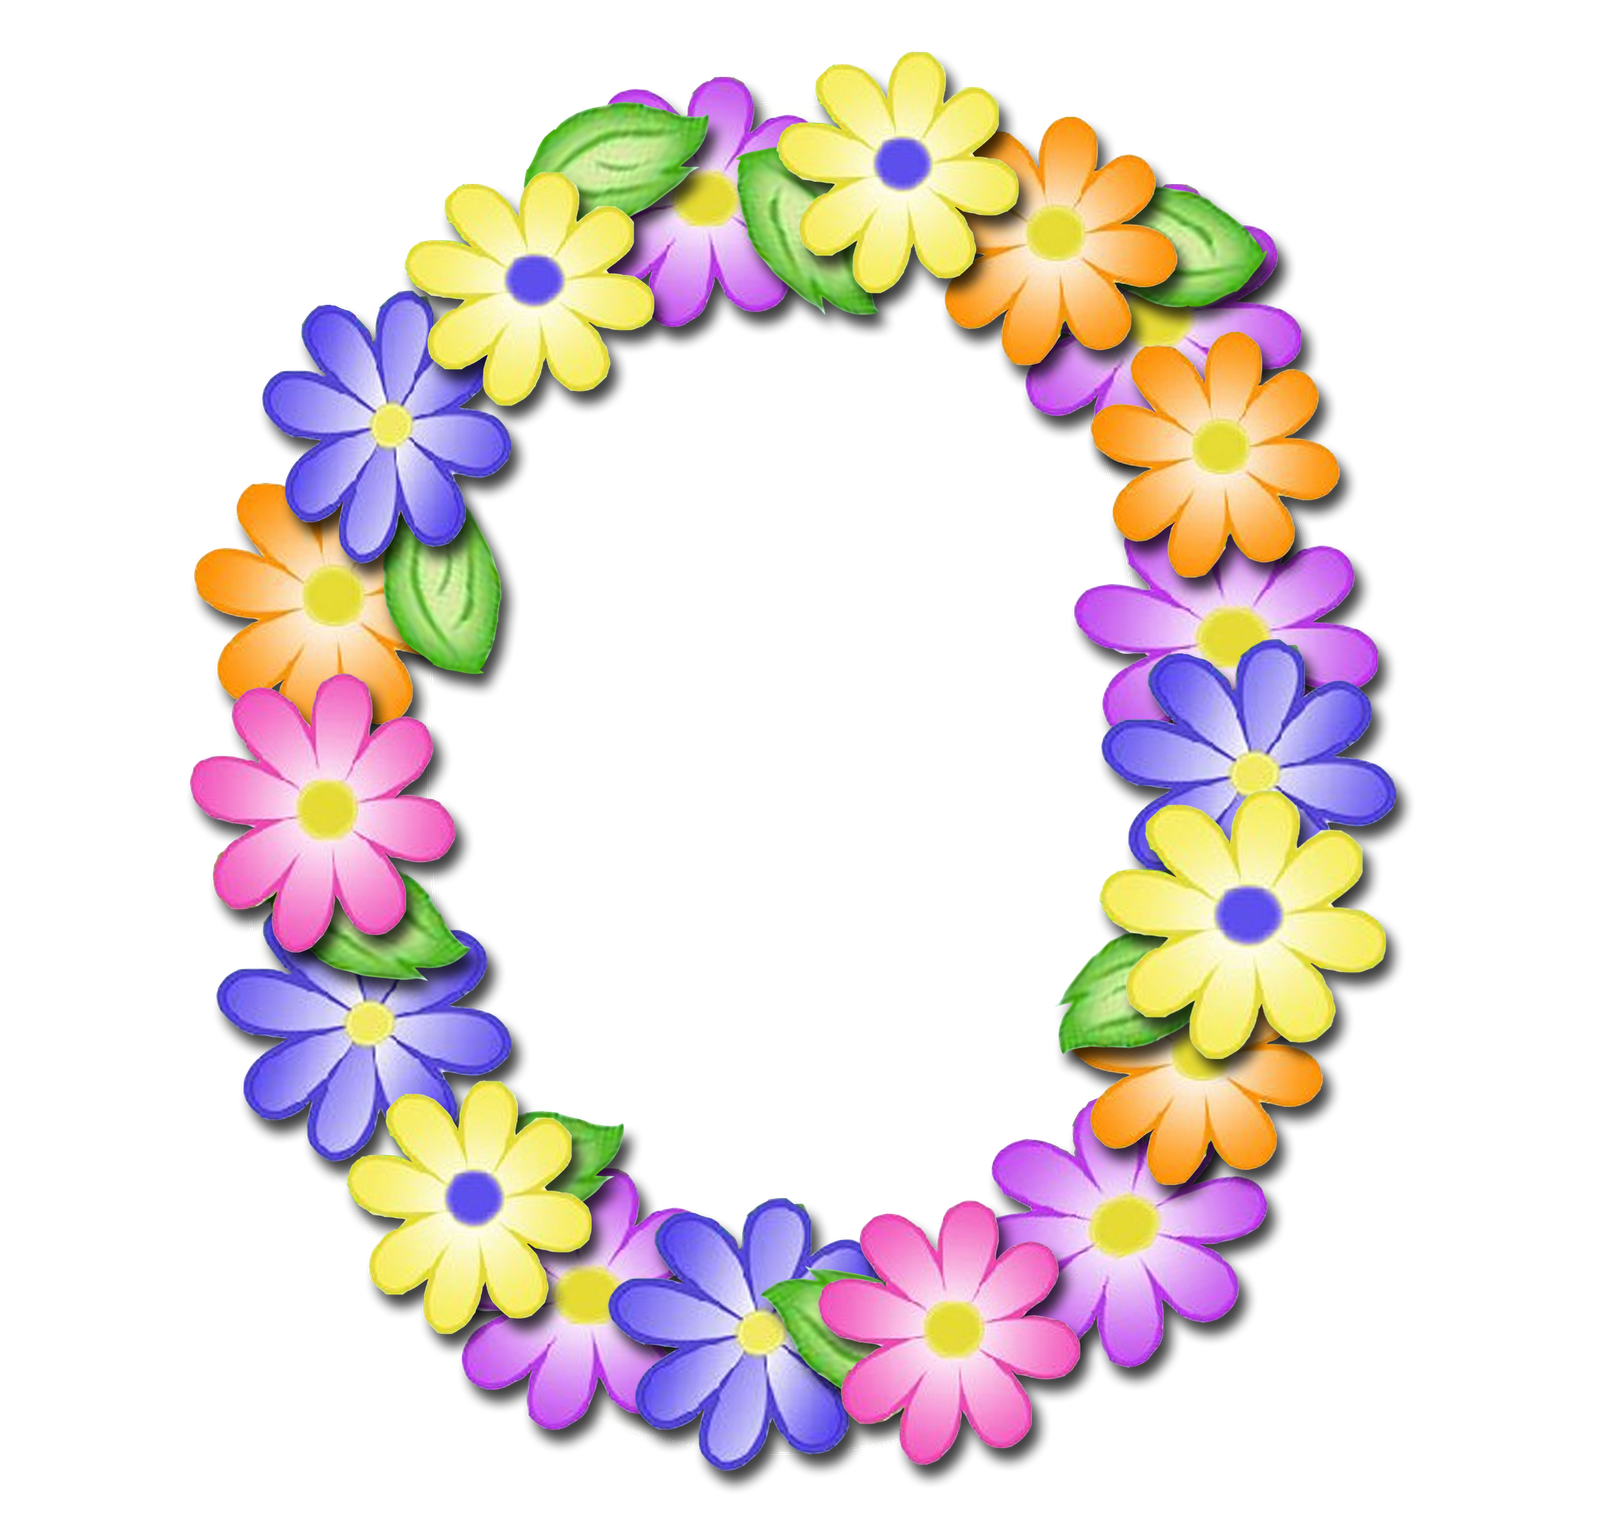 صور الحروف الإنجليزية بأجمل الزهور والورود بخلفية شفافة بنج png وجودة عالية للمصممين :: إبحث عن حروف إسمك بالإنجليزية - صفحة 2 P_16998elld1